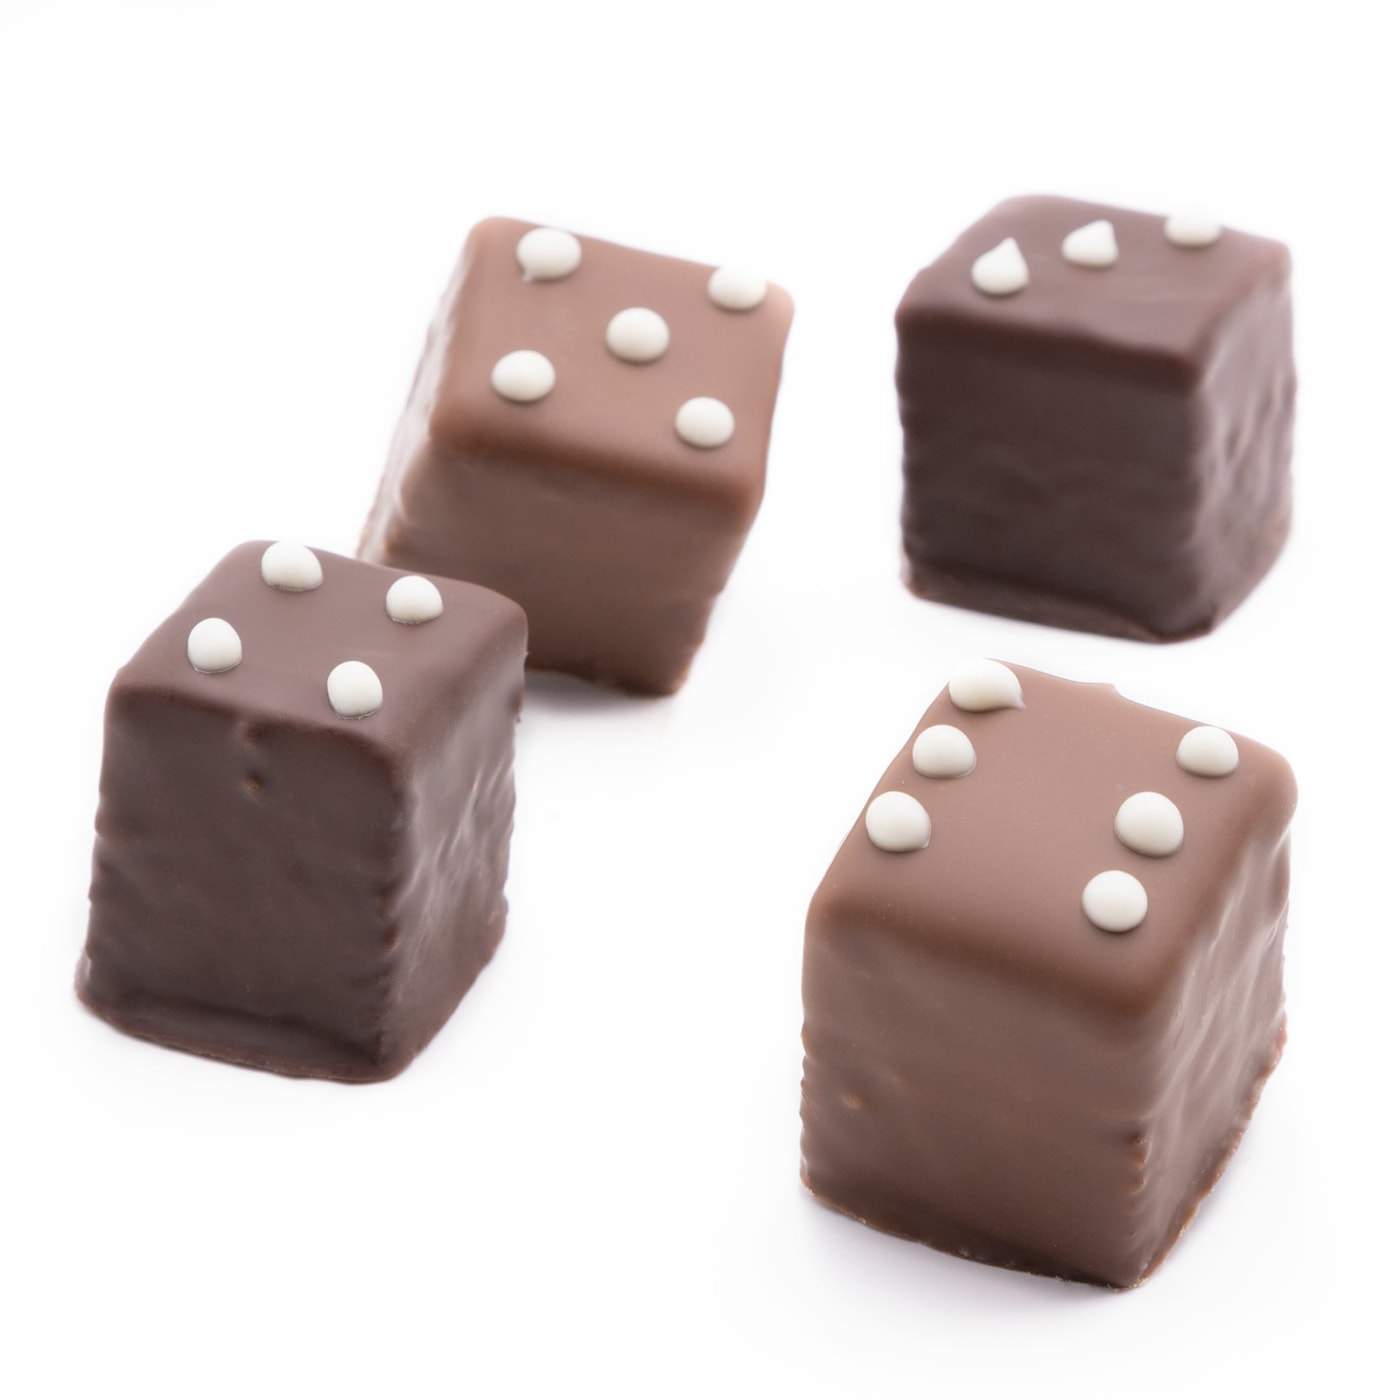 Dominosteine Lebkuchen gefüllt mit Marillengelee, gehüllt in Schokolade